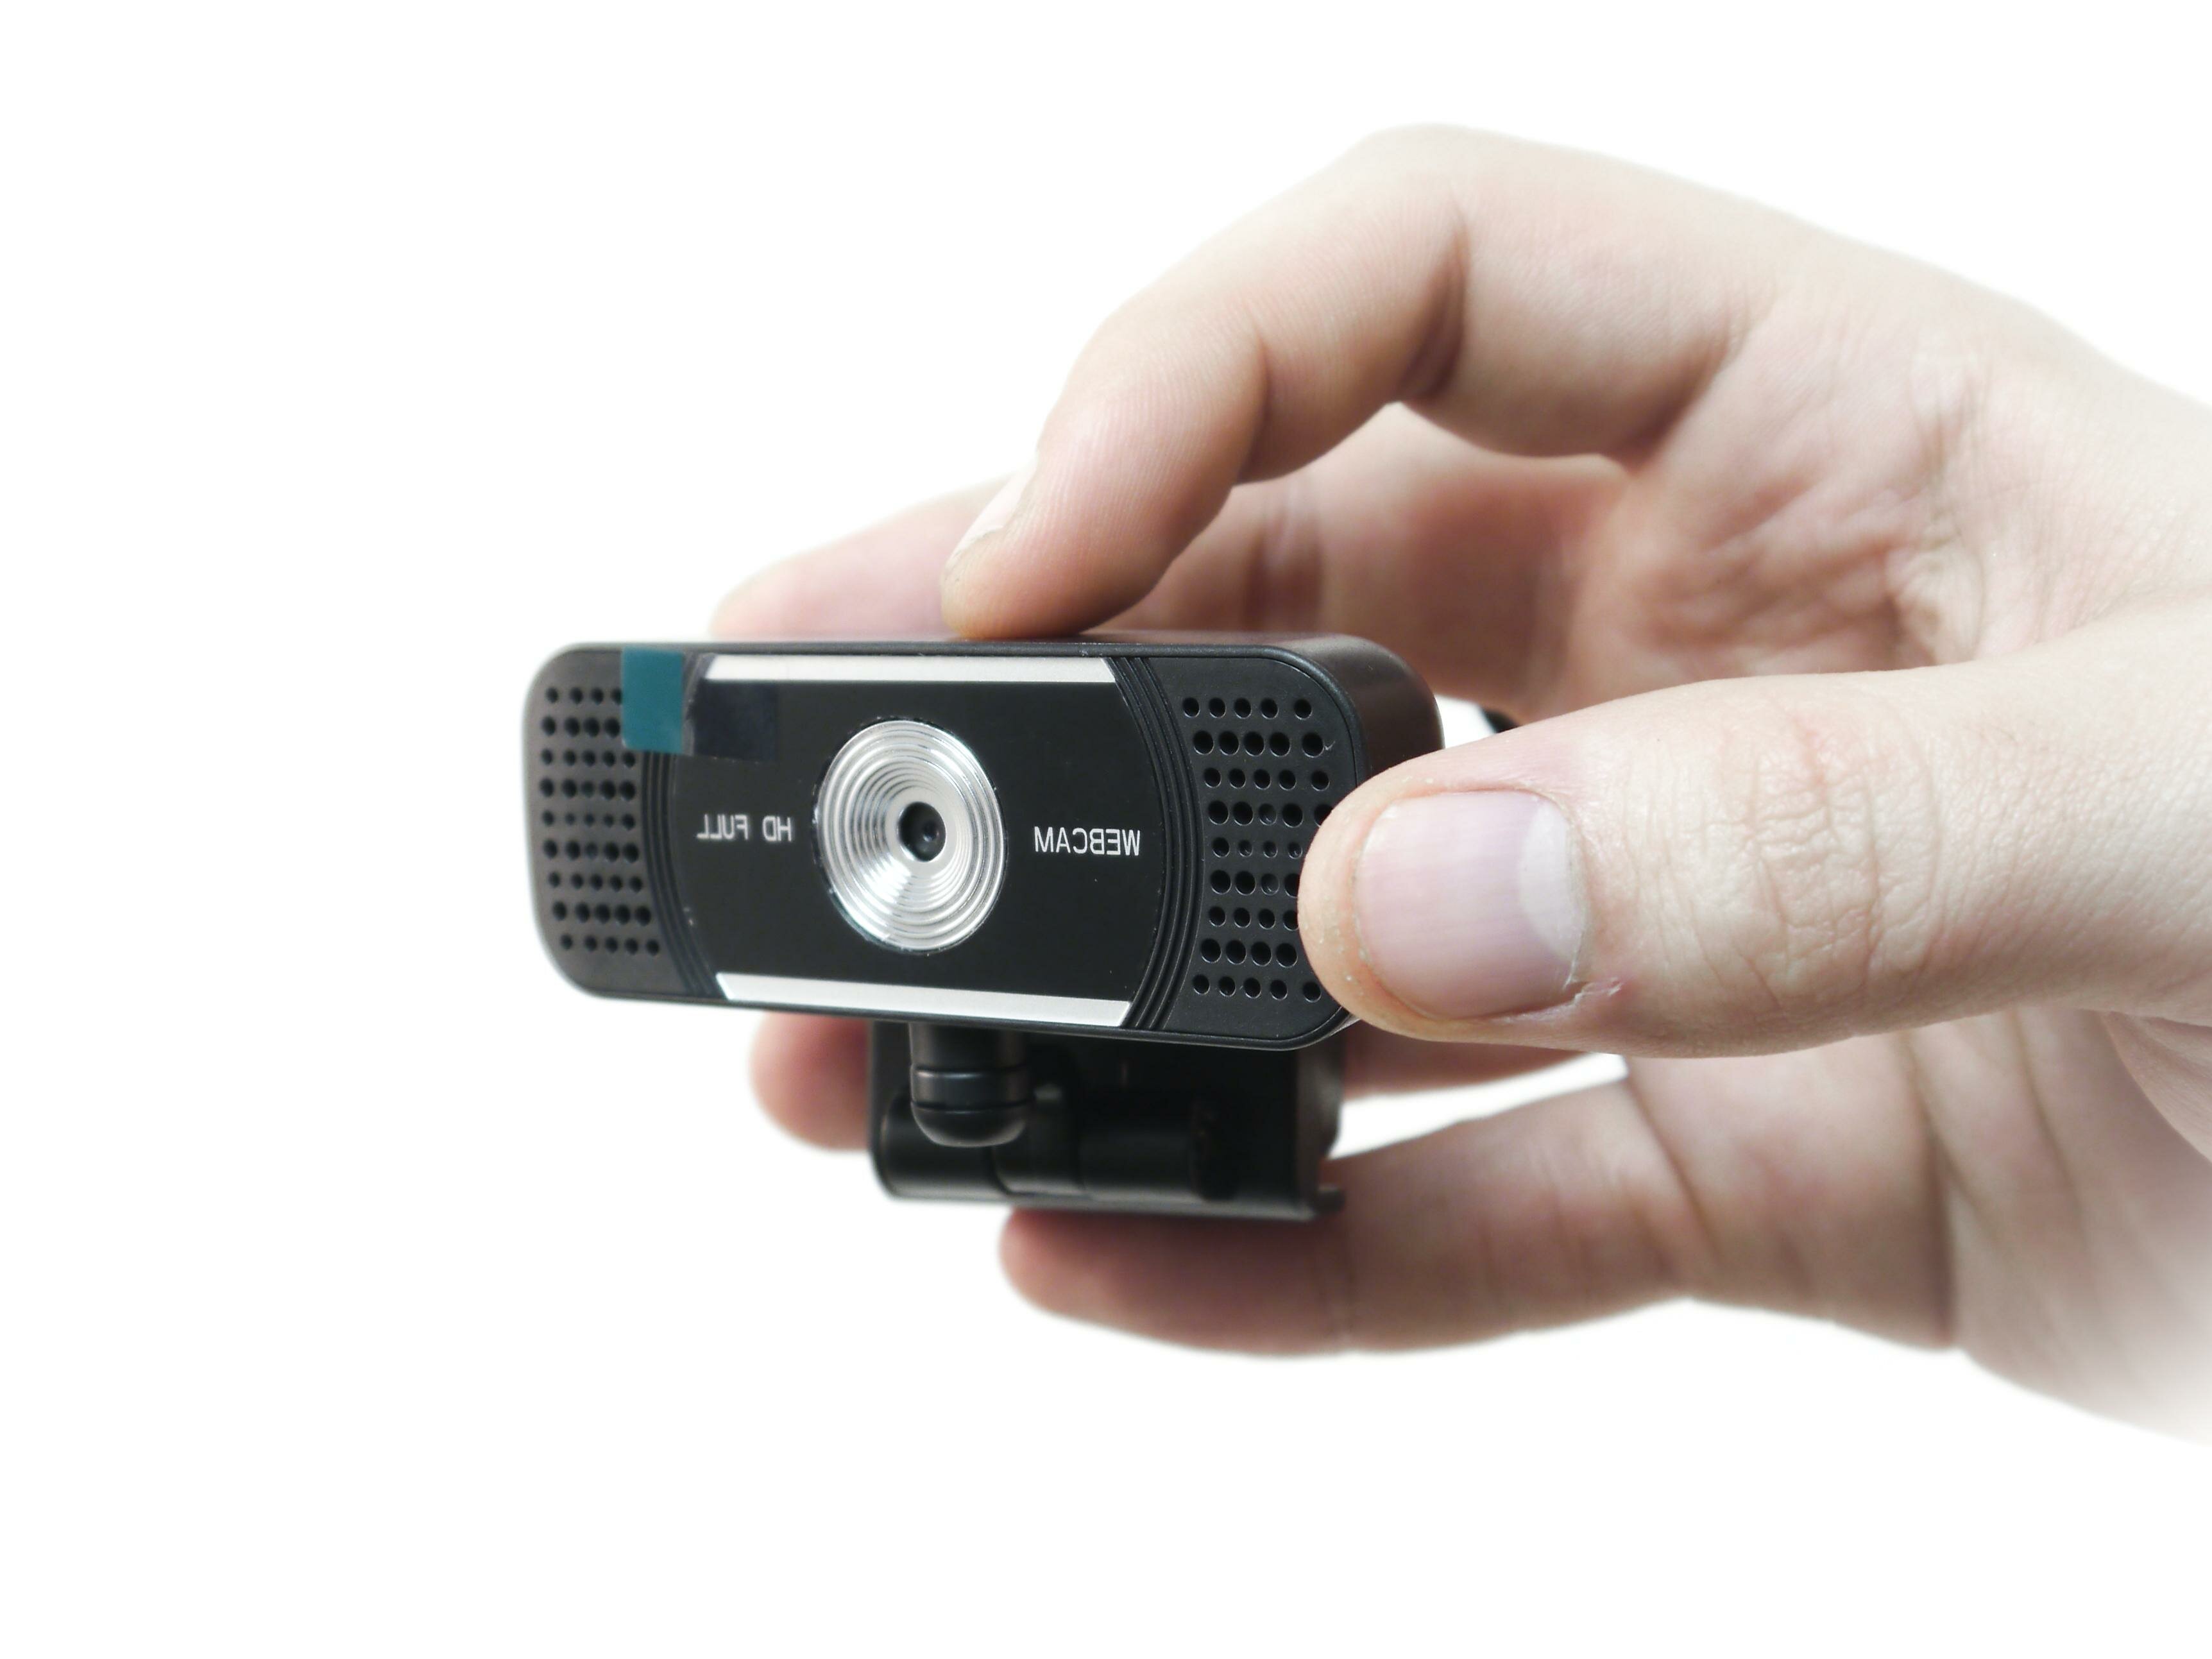 2K web камера HDcom Zoom W18-2K - камера для ютуба / камера для съемки видео на ютуб. Разрешение 2K - 25921944 в подарочной упаковке